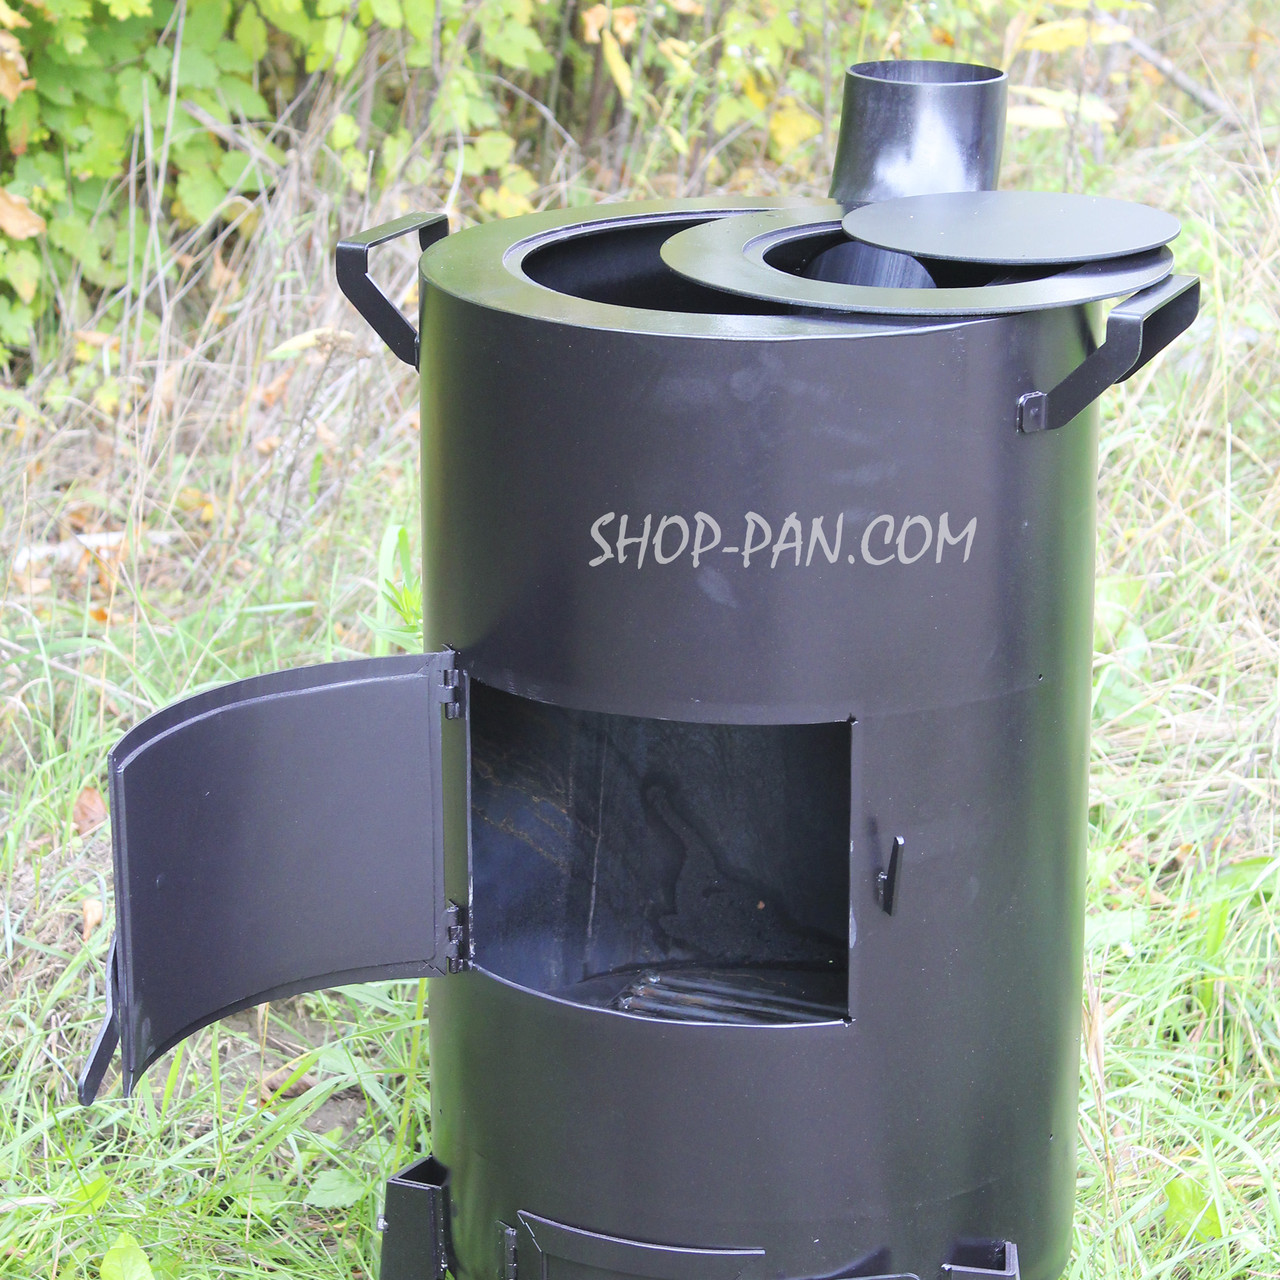 Піч-буржуйка SHOP-PAN 3 мм із варильною поверхнею на дровах для внутрішнього нагрівання приміщень